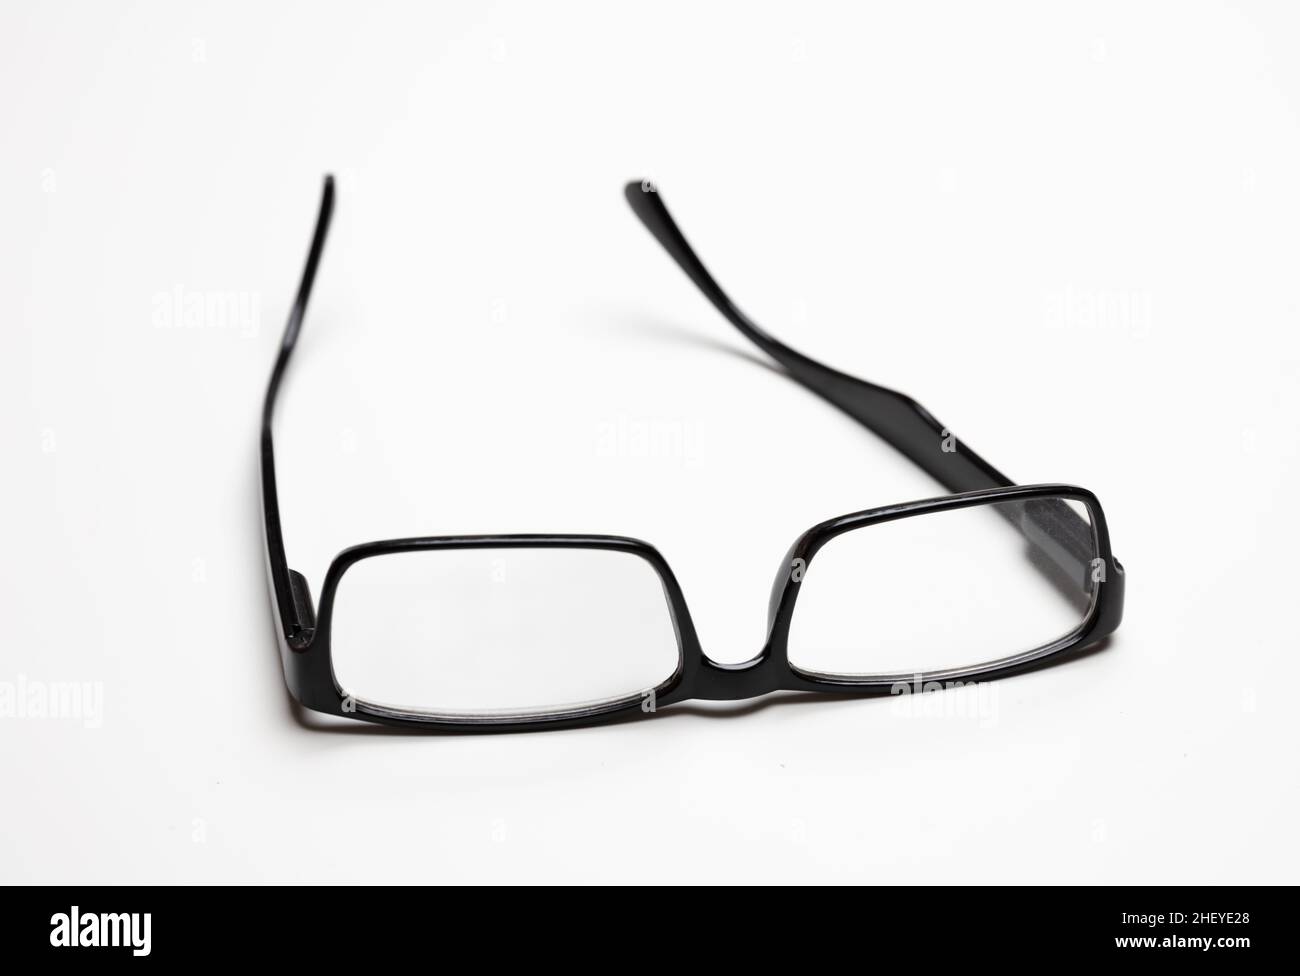 Occhiali o occhiali per la correzione della vista. Miopia, presbiopia montatura nera occhiali isolati ritaglio su sfondo bianco. Foto Stock